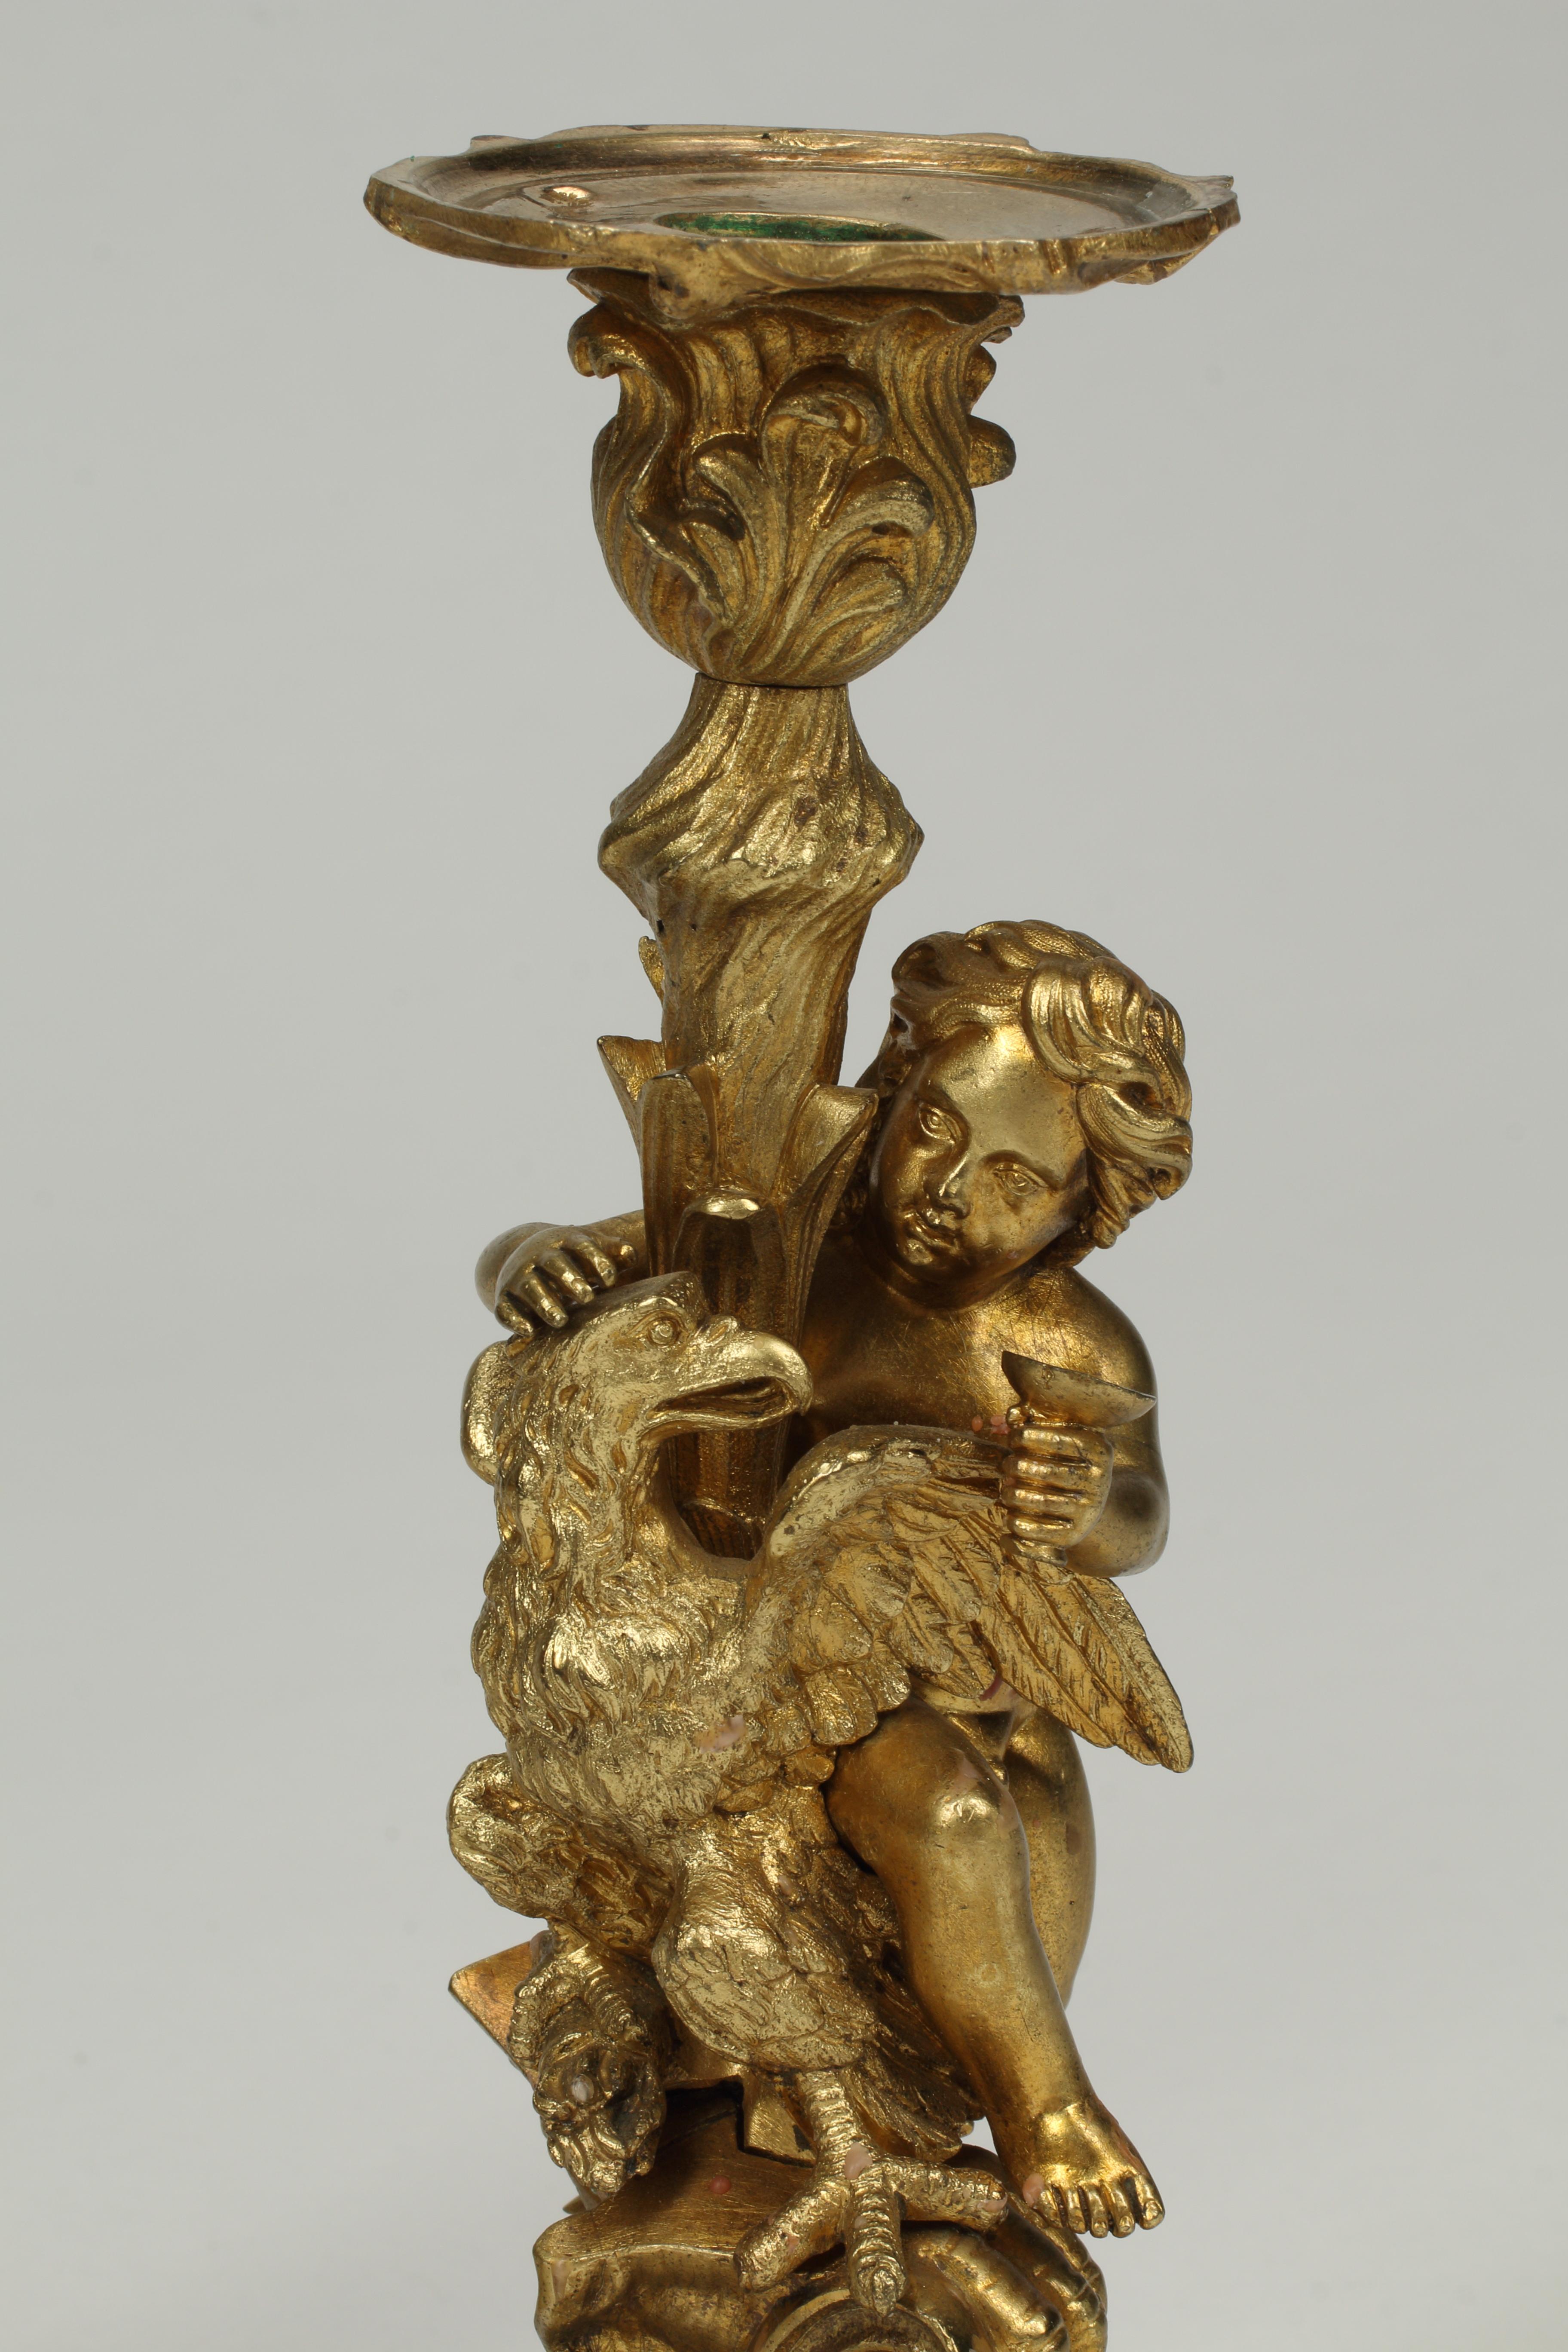 Ein charmantes Paar Französisch 19. Jahrhundert schön geschnitzt dore Bronze-Kerzenständer.
Bronzeschnitzereien von zwei Engelsfiguren von Kindern, die einen Kelch halten und Adler streicheln, auf Sockeln. 